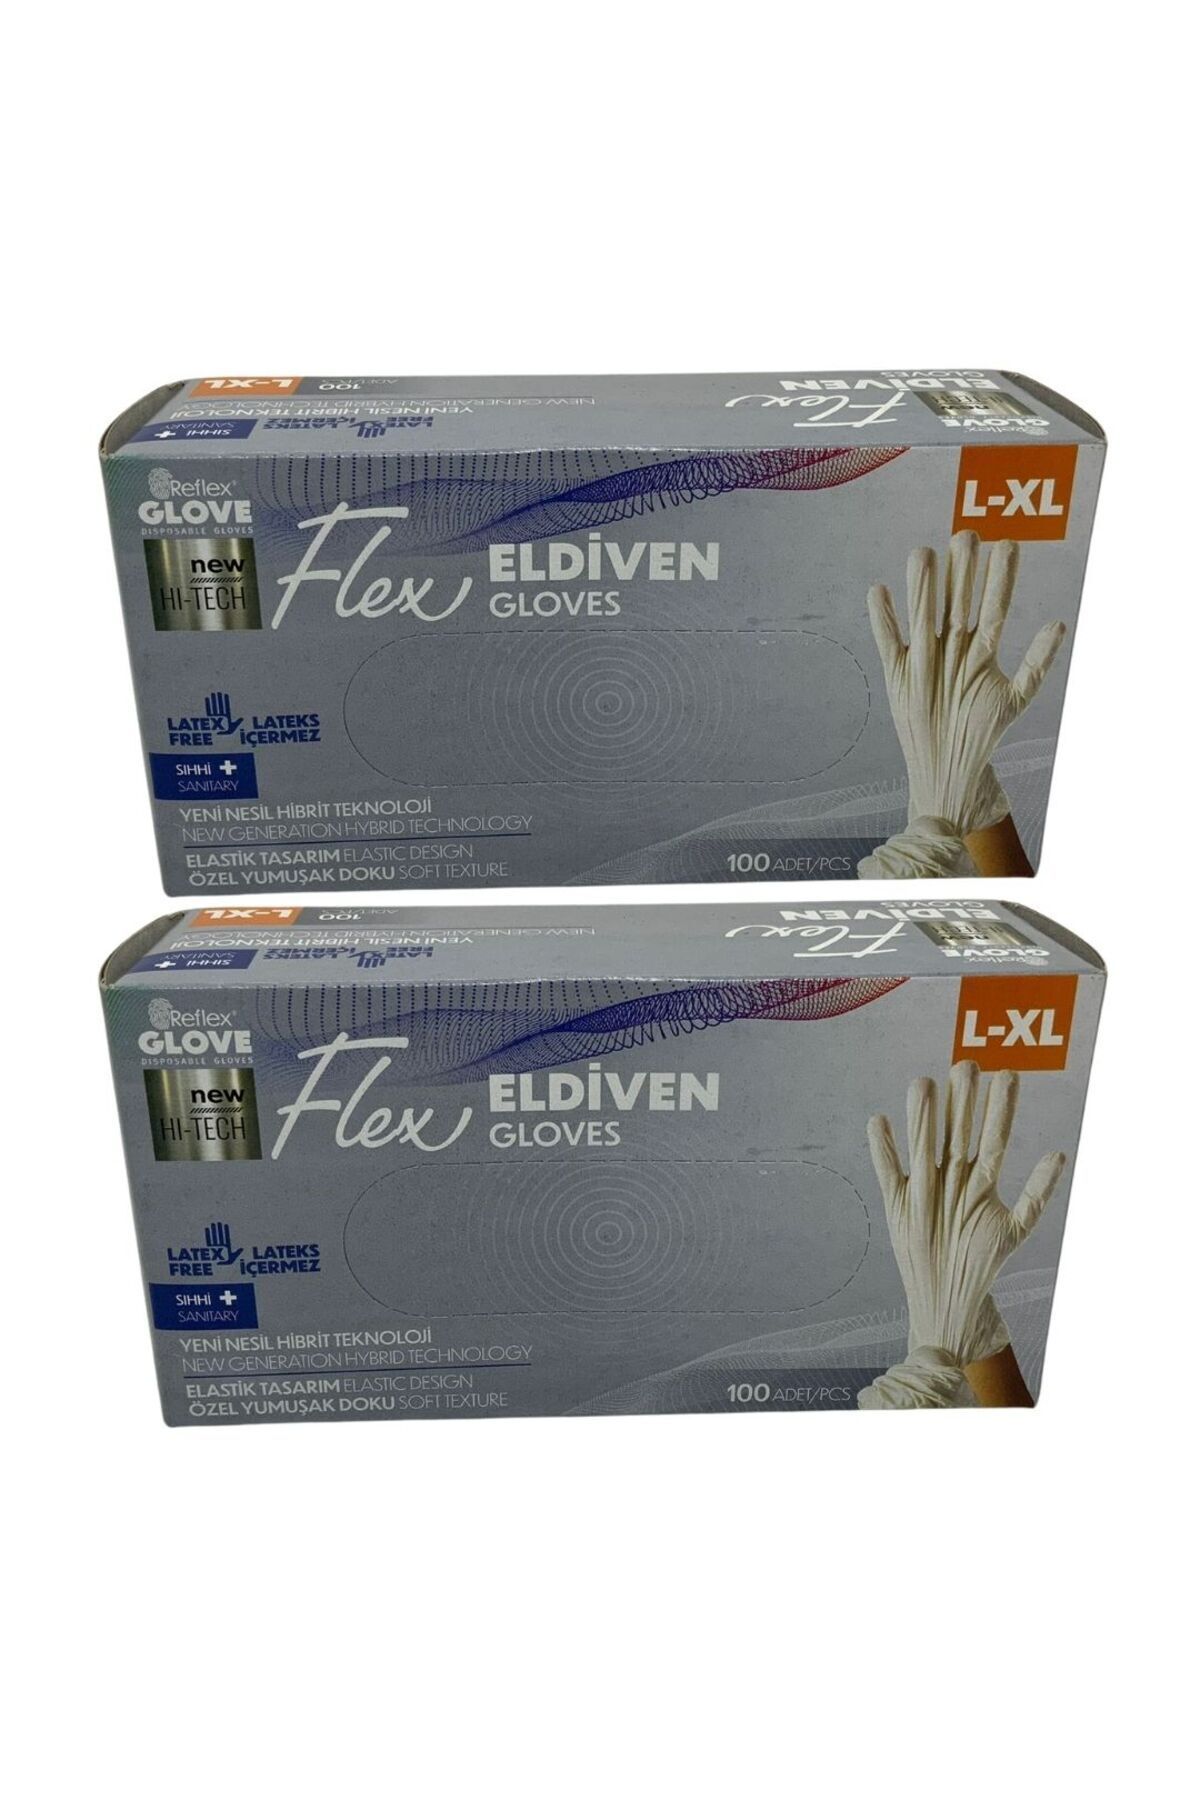 Reflex Glove Flex Eldiven L-XL 100 Adet 2 Adet